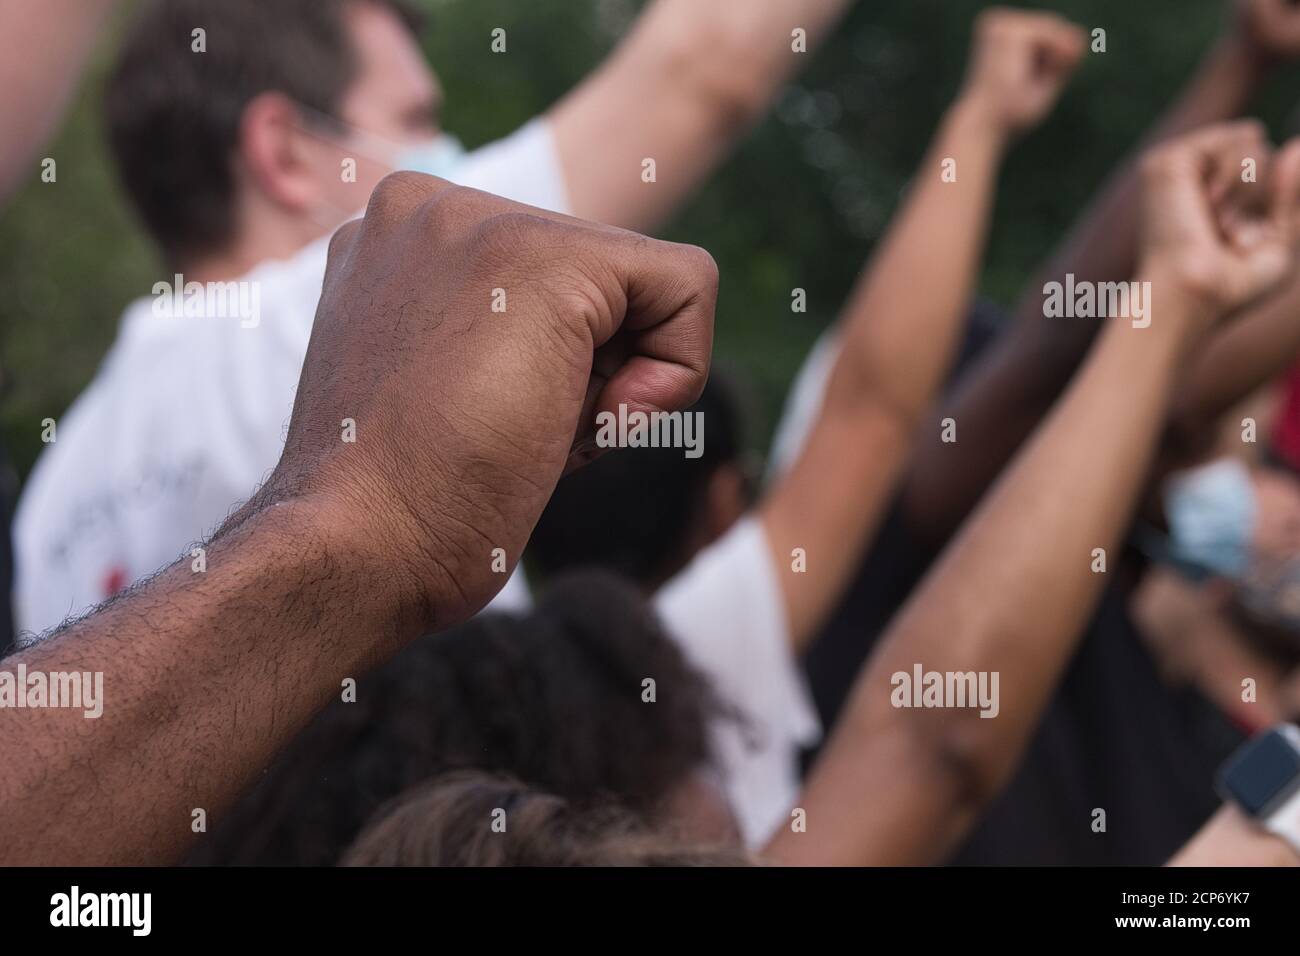 Nueva York, NY, 6 de junio de 2020: Los puños en el aire en una protesta de vidas negras Foto de stock